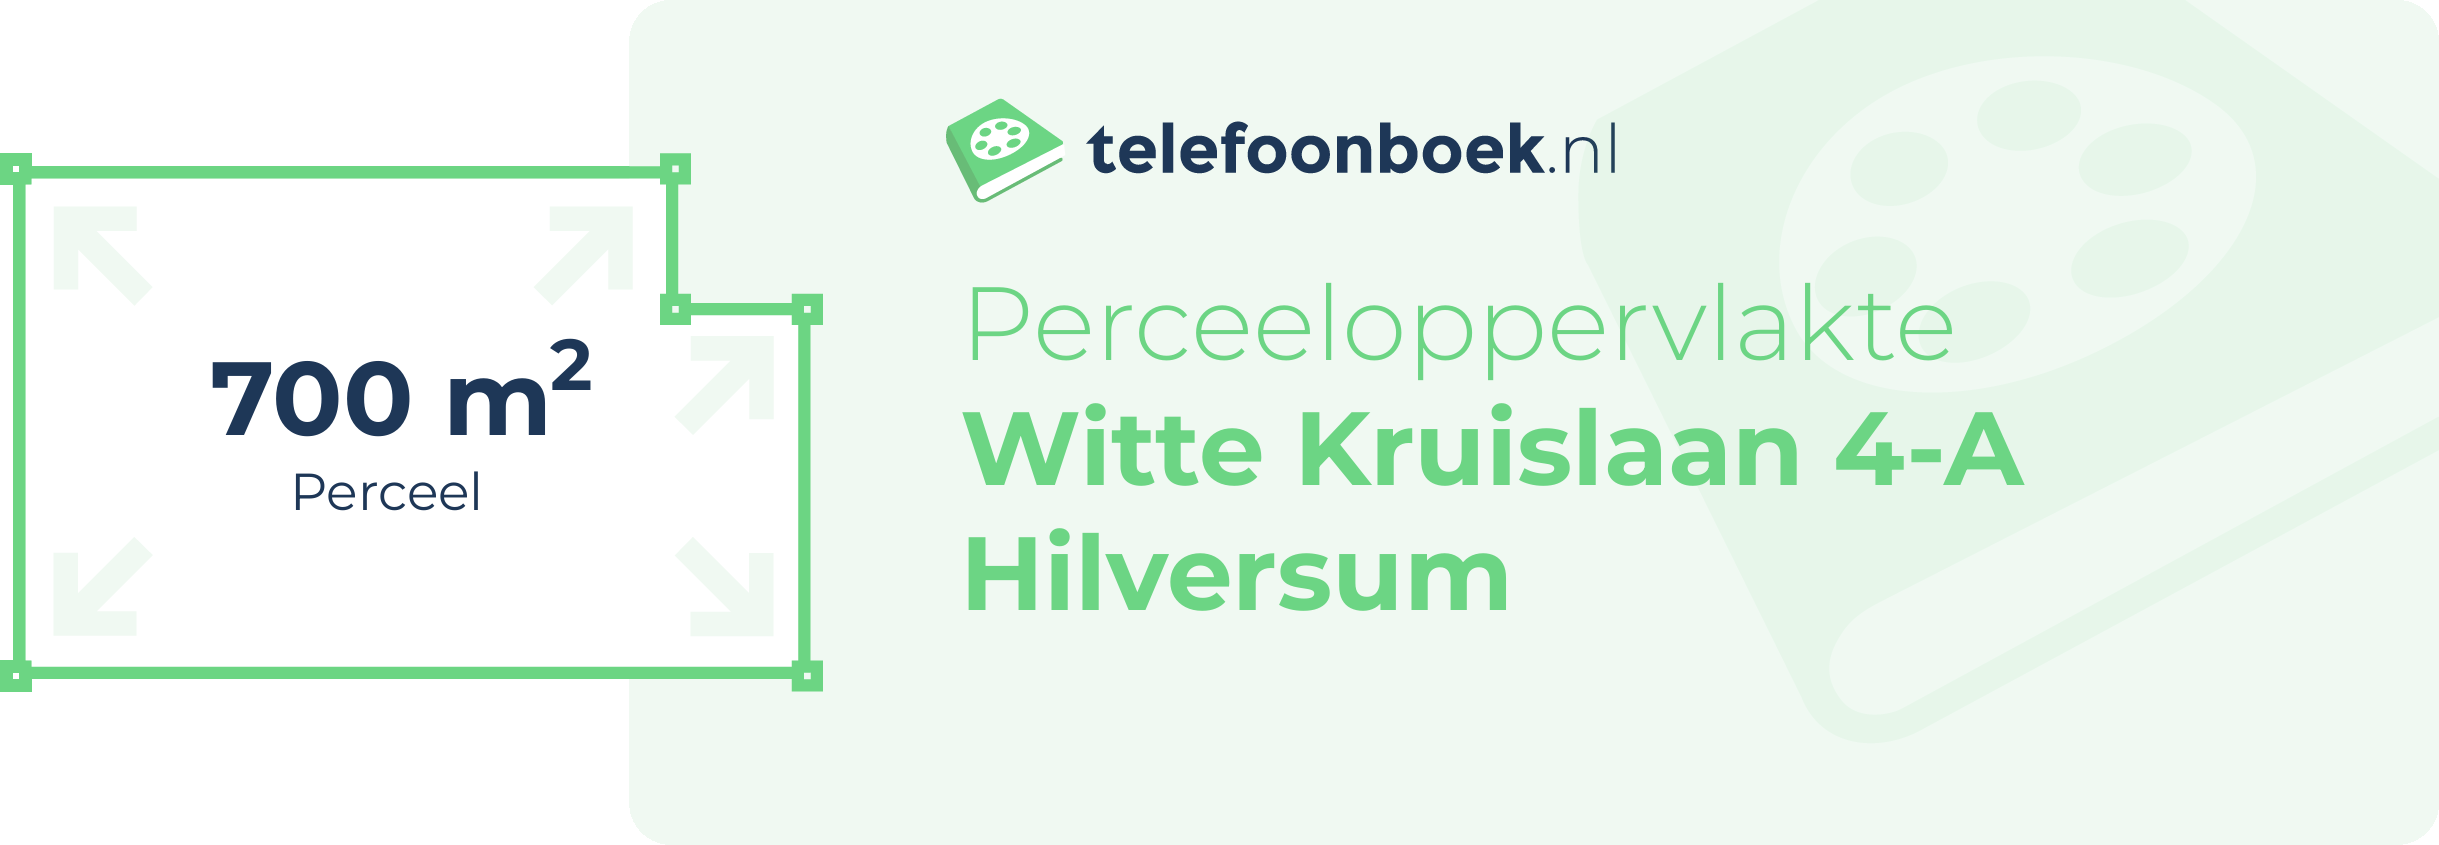 Perceeloppervlakte Witte Kruislaan 4-A Hilversum